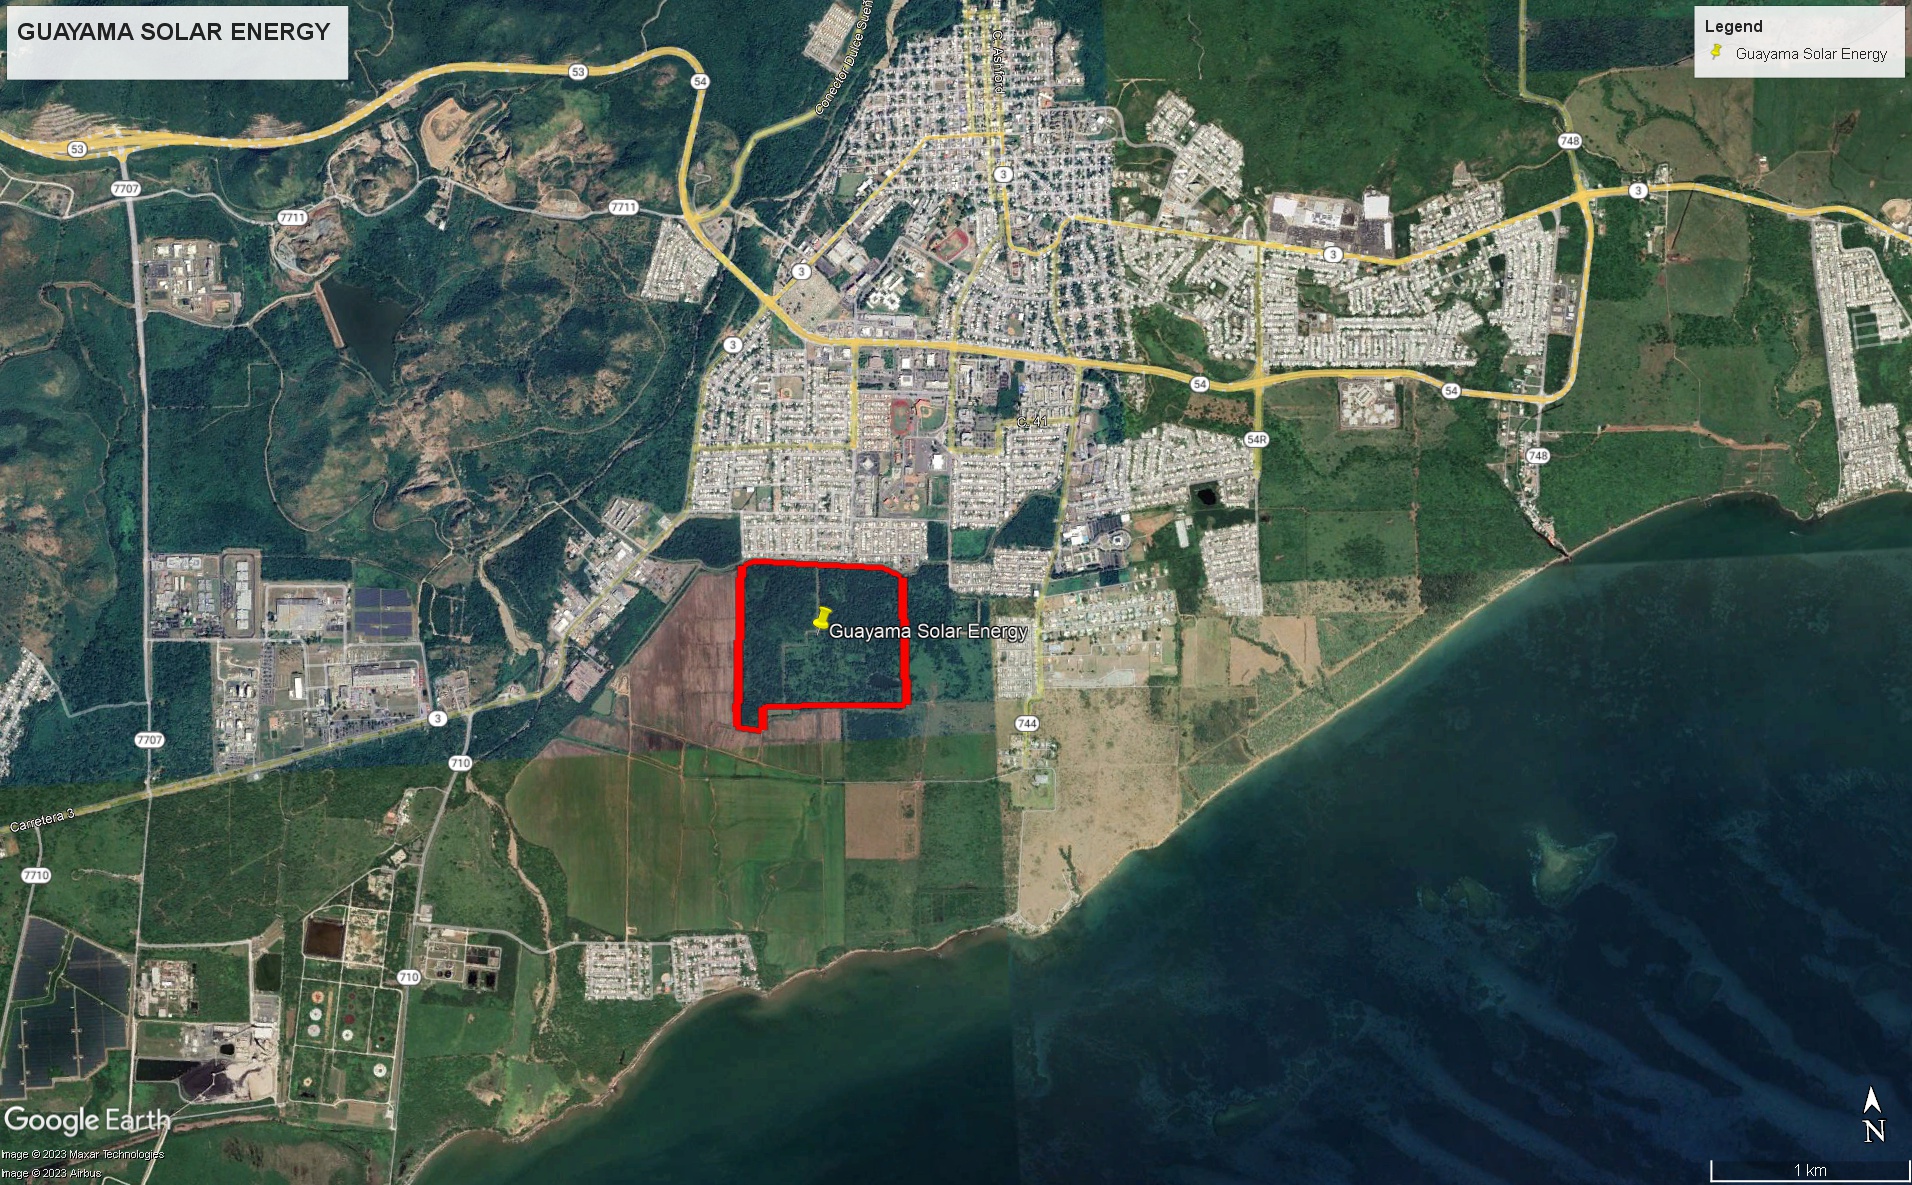 Guayama Solar Energy - Google Aerial Image